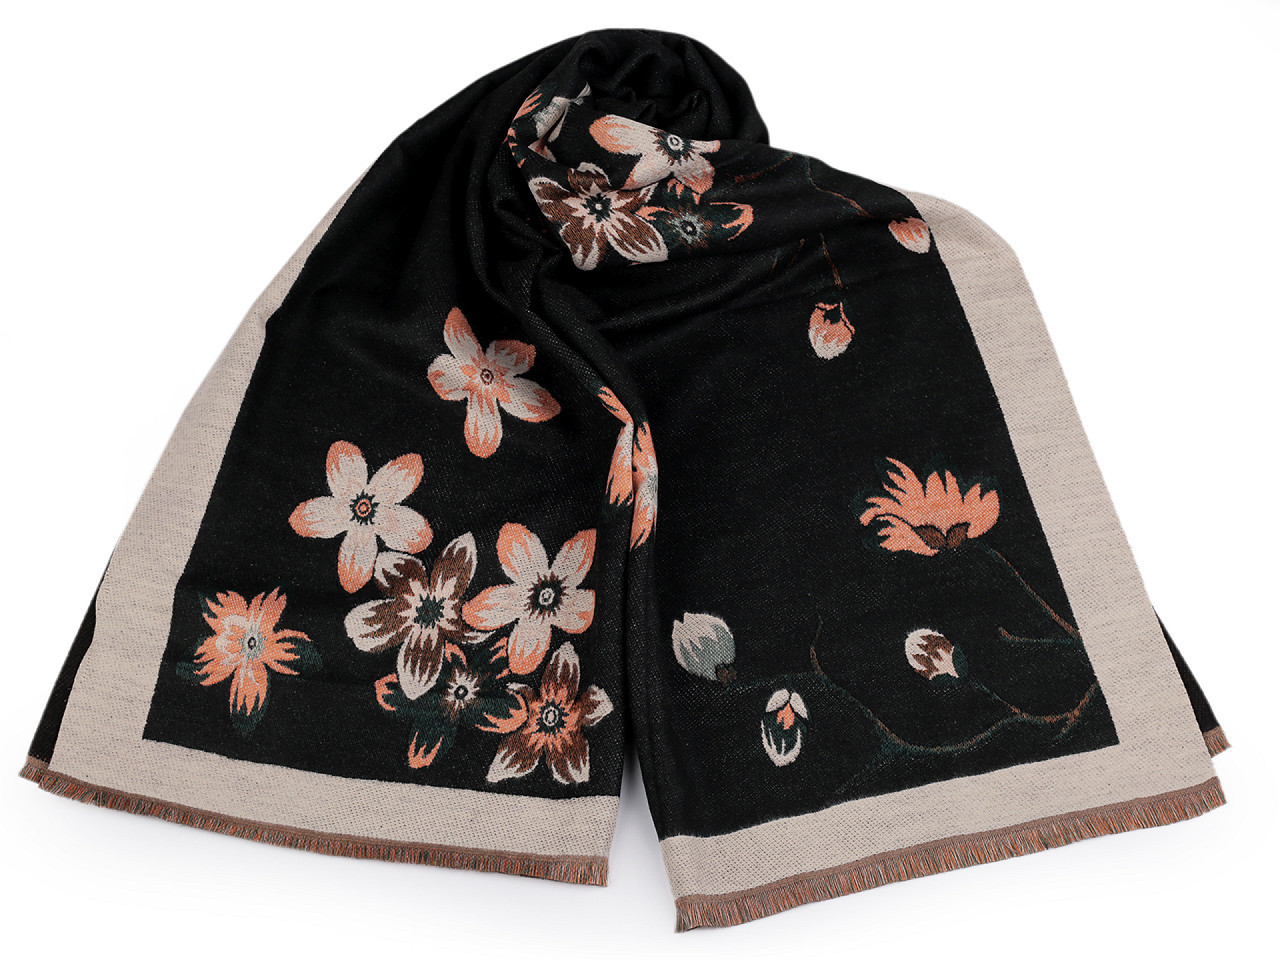 Šátek / šála typu kašmír s třásněmi, květy 65x190 cm, barva 12 černá béžová světlá